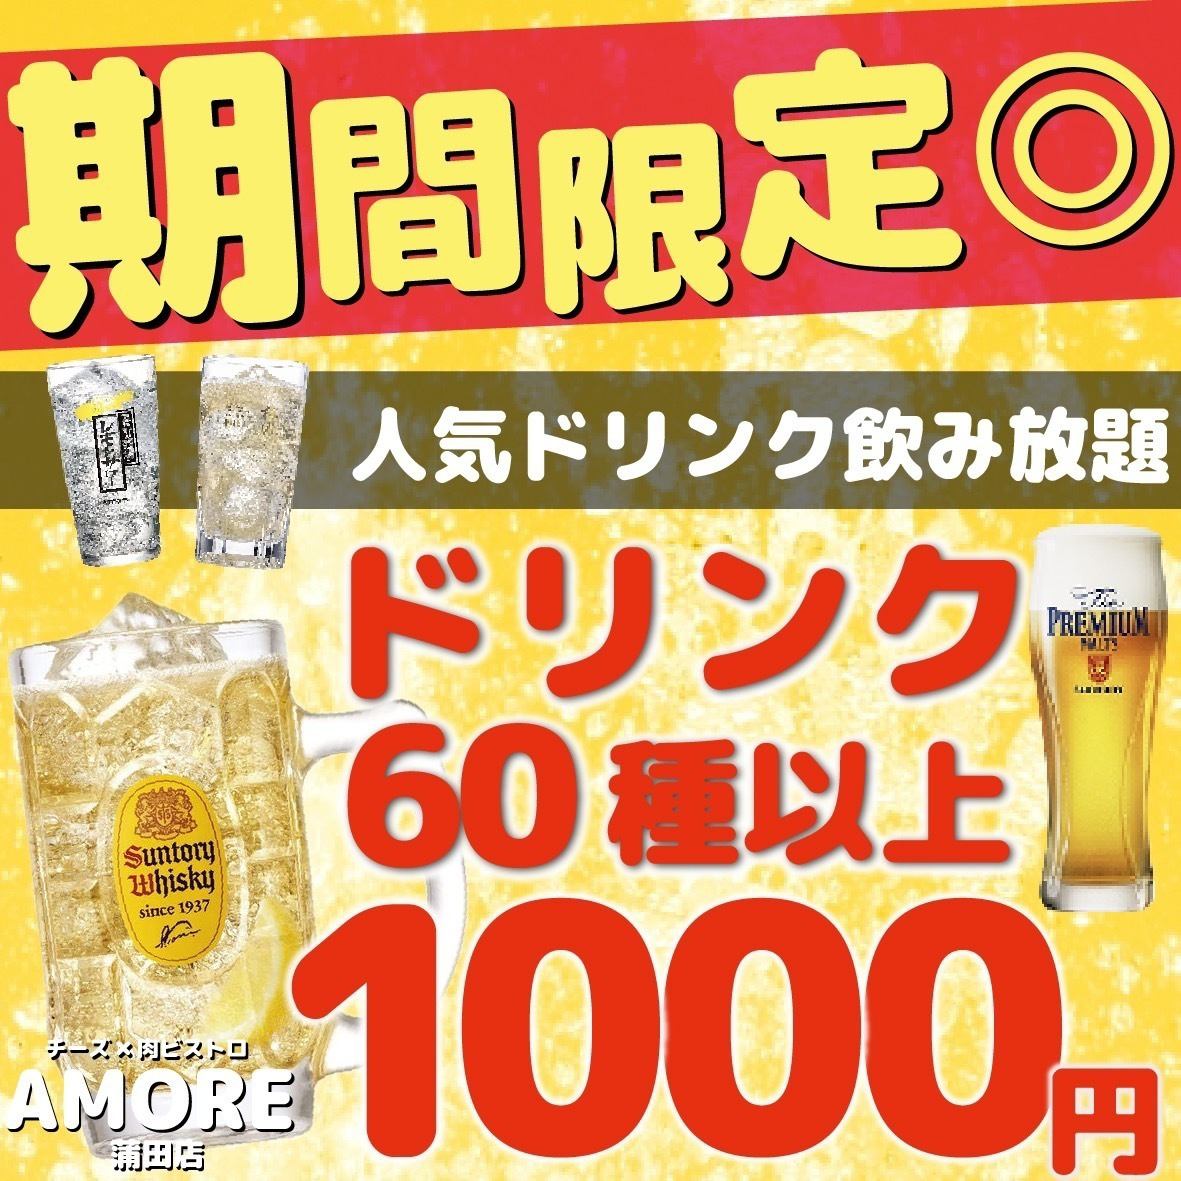 【超值♪】2小时60种饮料无限畅饮1980日元→980日元